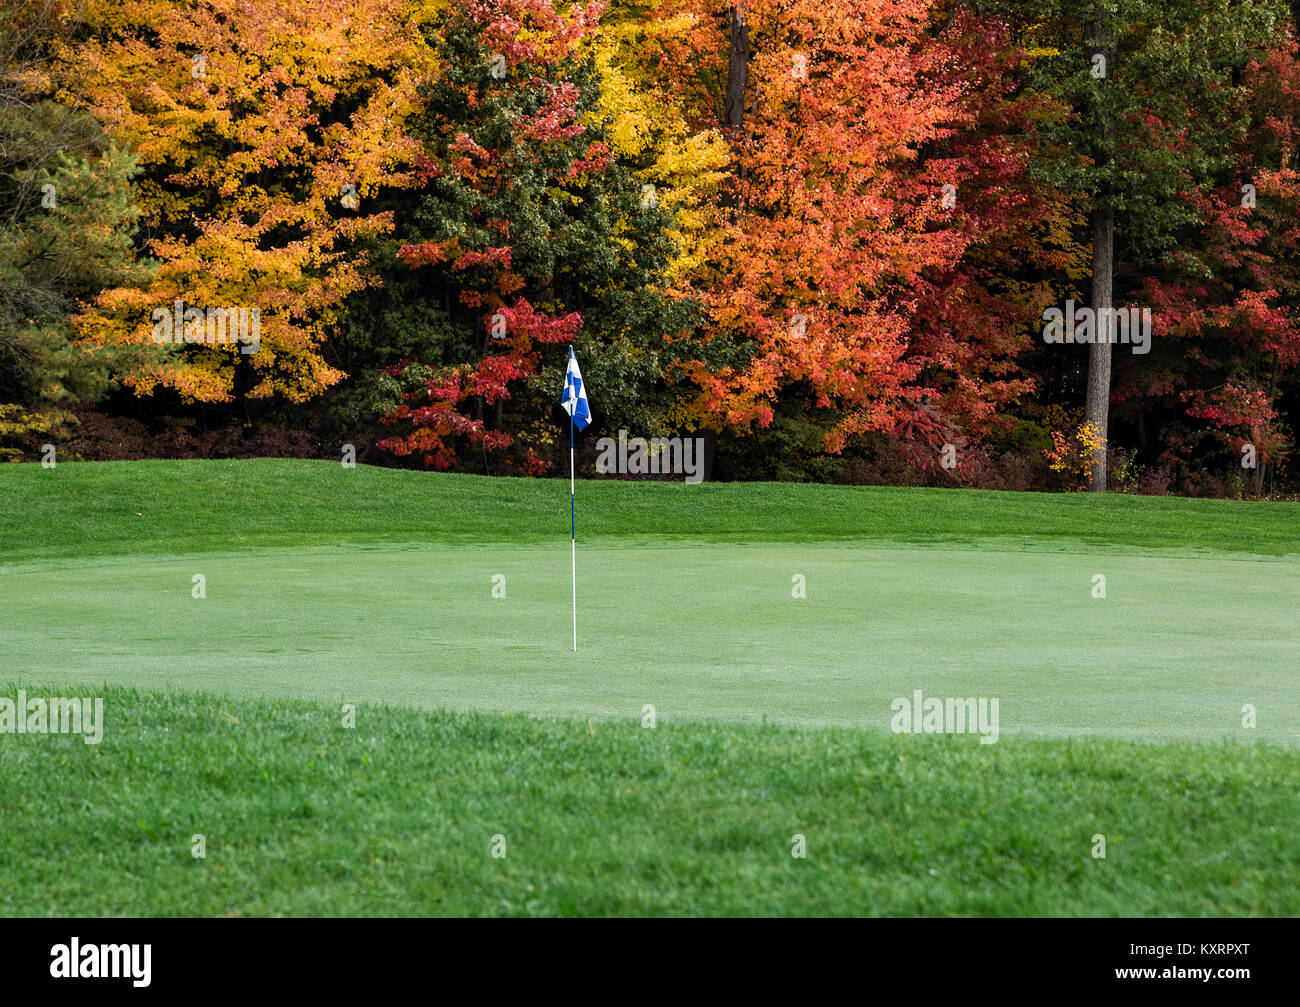 Golf putting green avec feuillage de l'automne. Banque D'Images